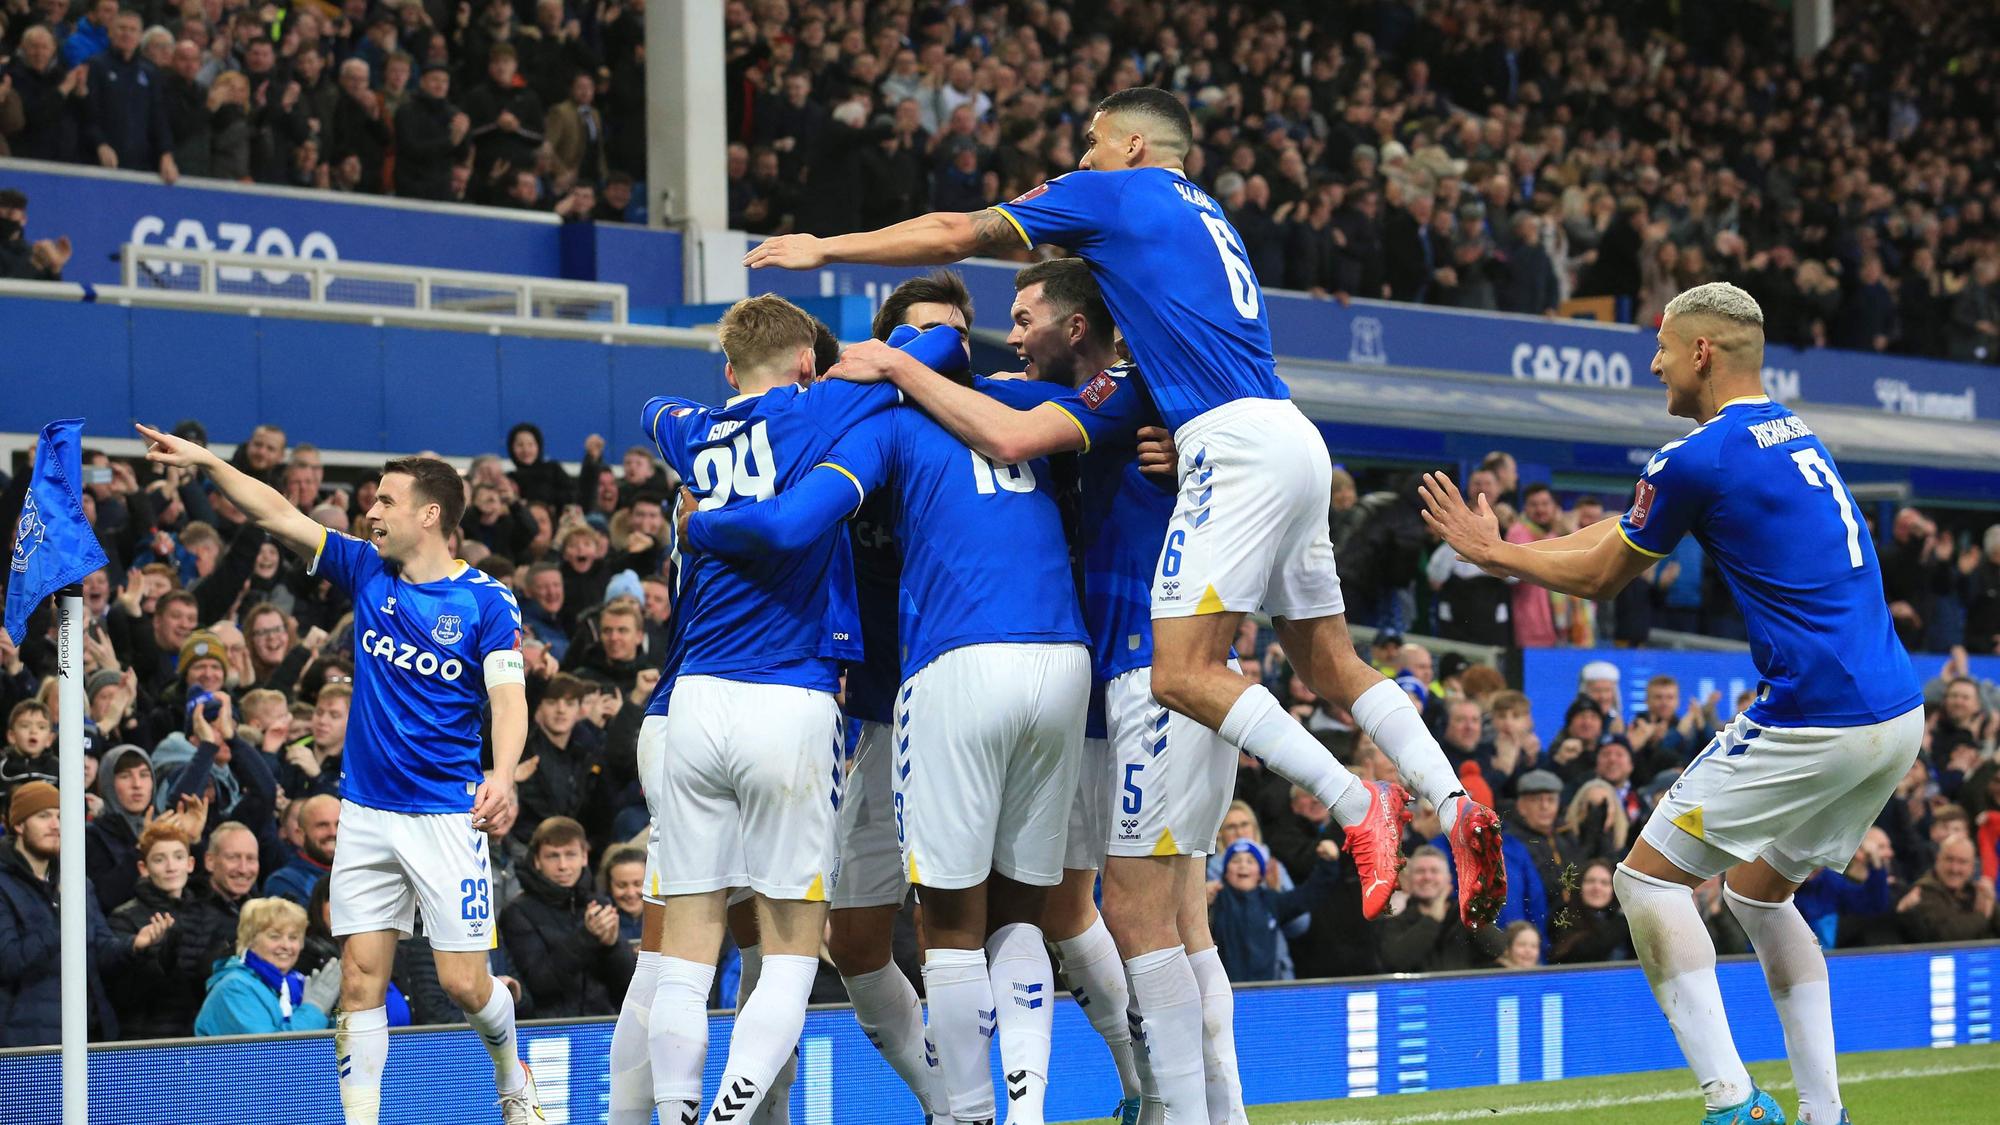 El Everton podría recibir una deducción de puntos que le costaría el descenso | AFP